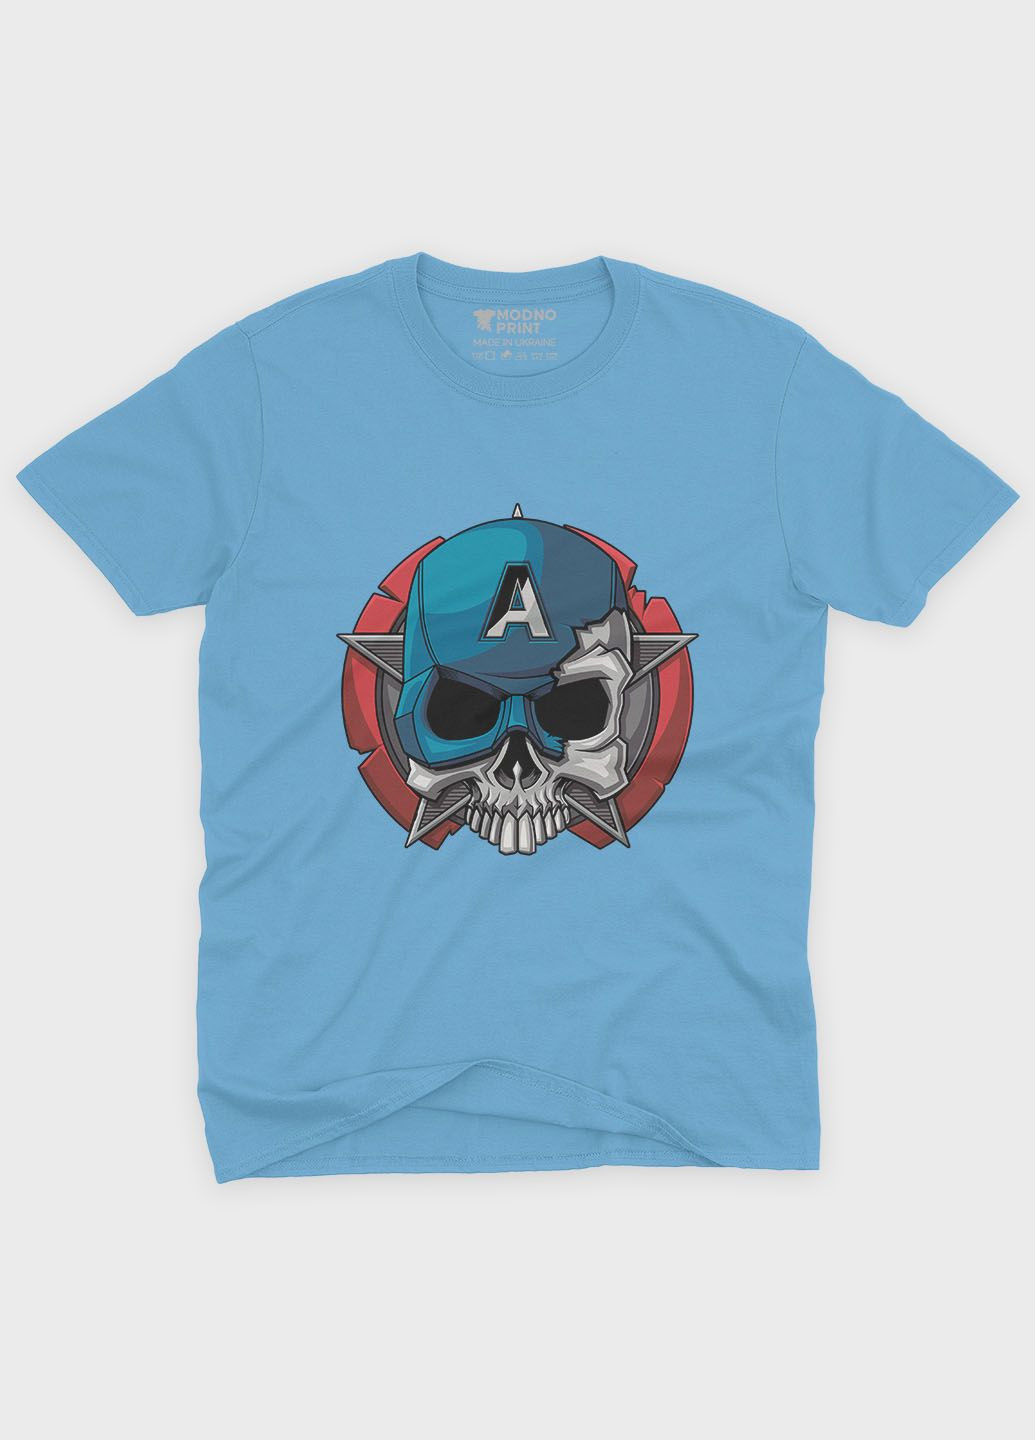 Голубая демисезонная футболка для девочки с принтом супергероя - капитан америка (ts001-1-lbl-006-022-003-g) Modno